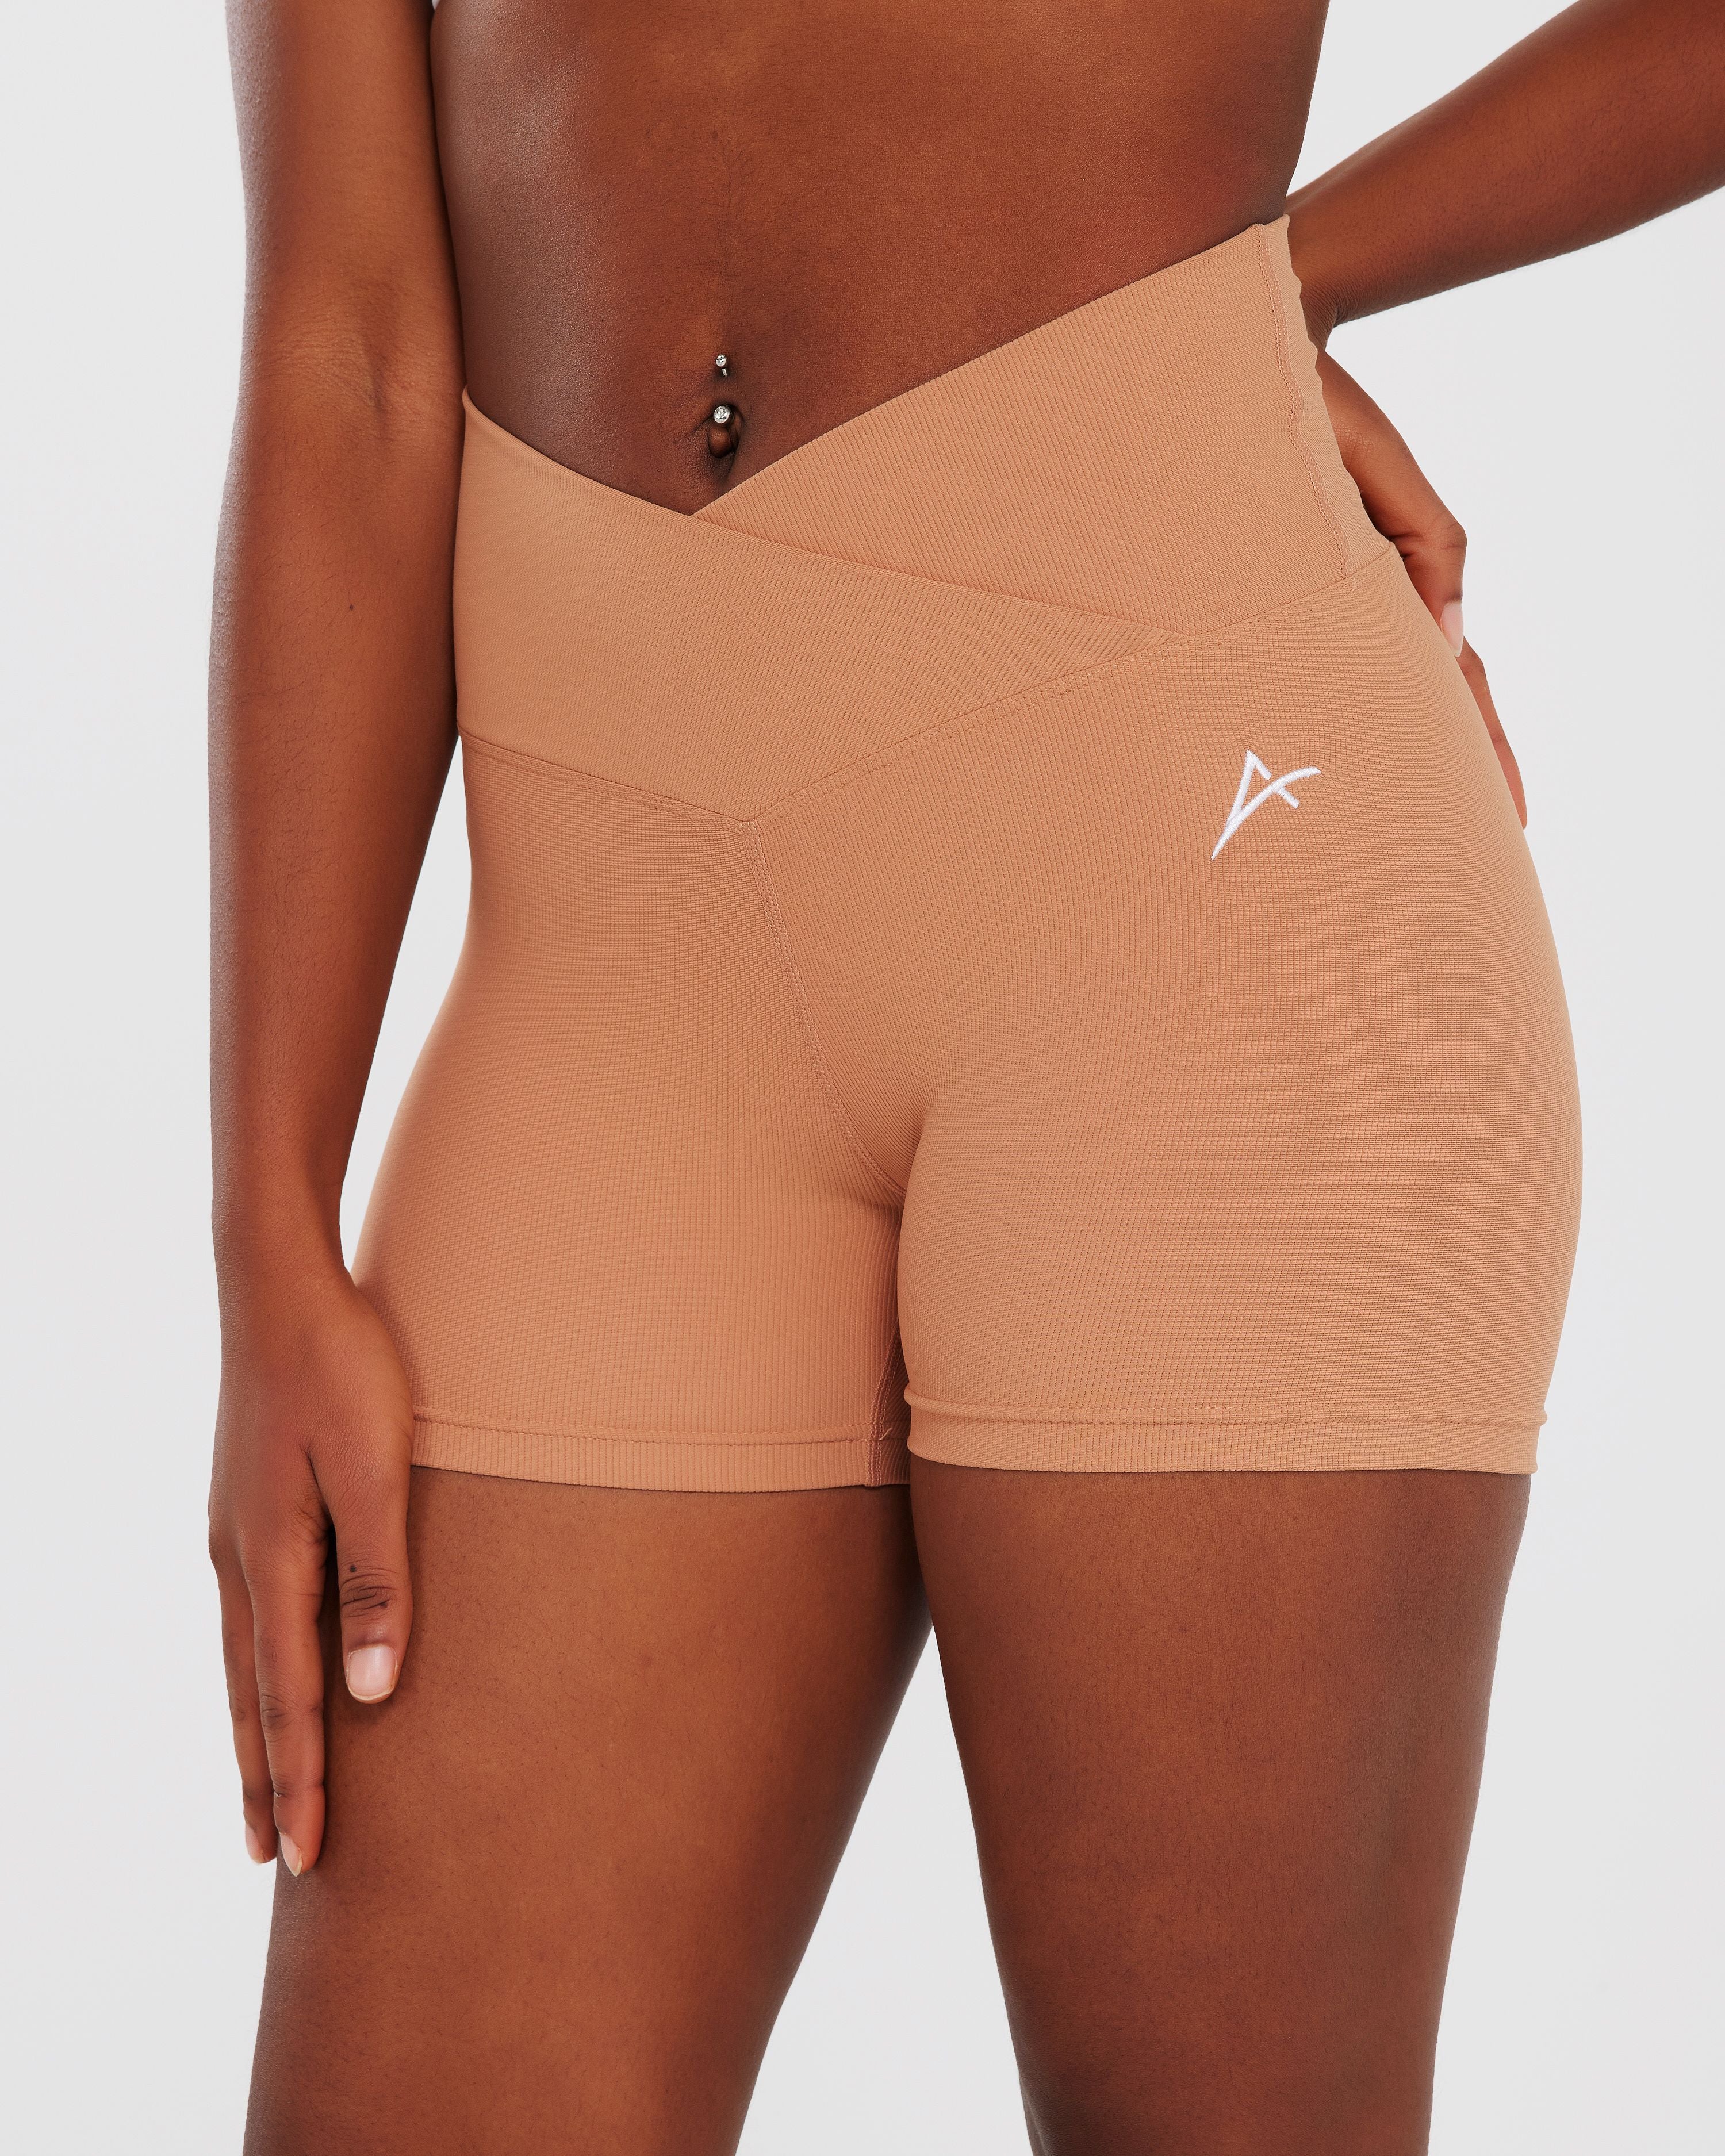 Buy Vital Scrunch Bum Shorts Online in Nude